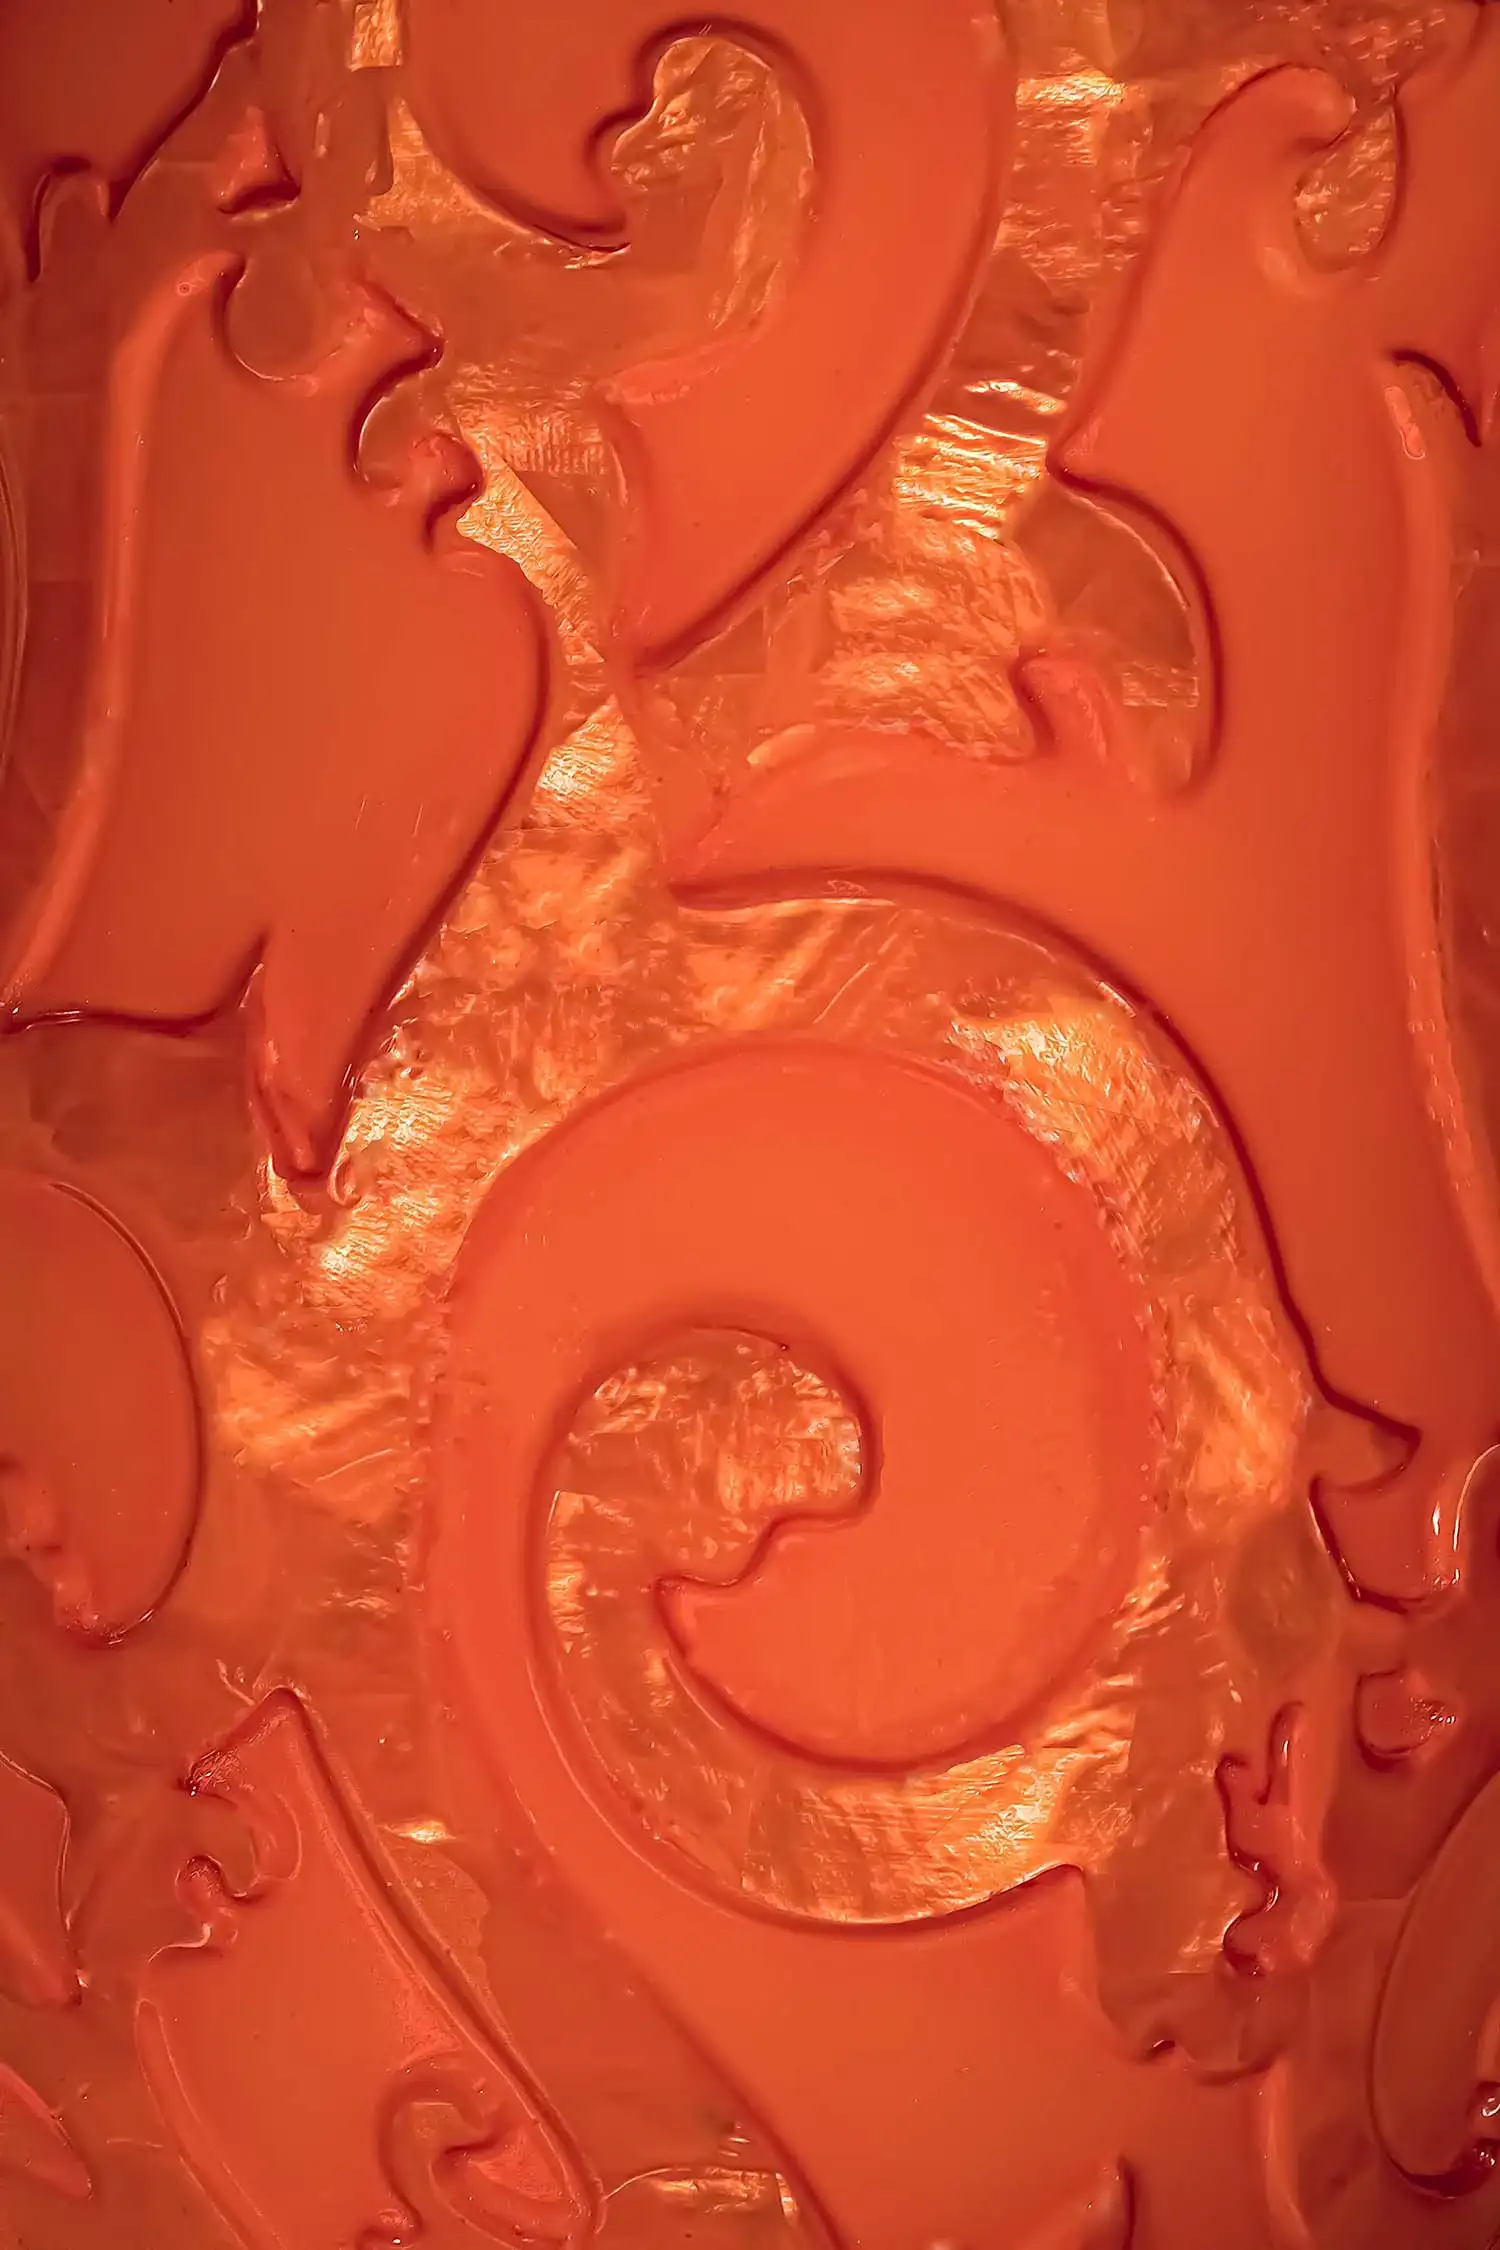 an orange vase with a swirl design